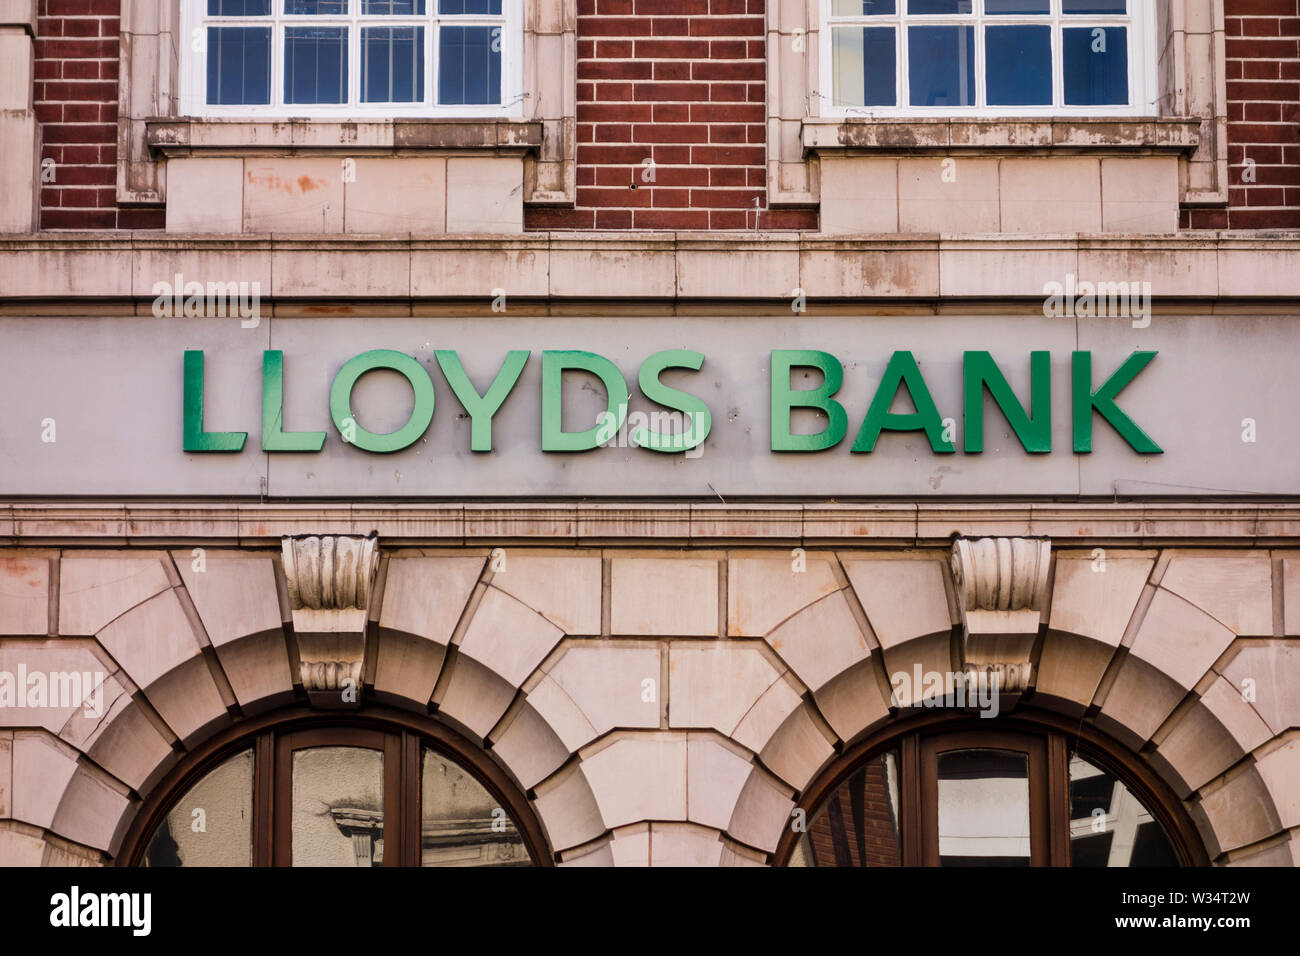 Loyds Bank sign, Stourbridge, West Midlands, UK Stock Photo